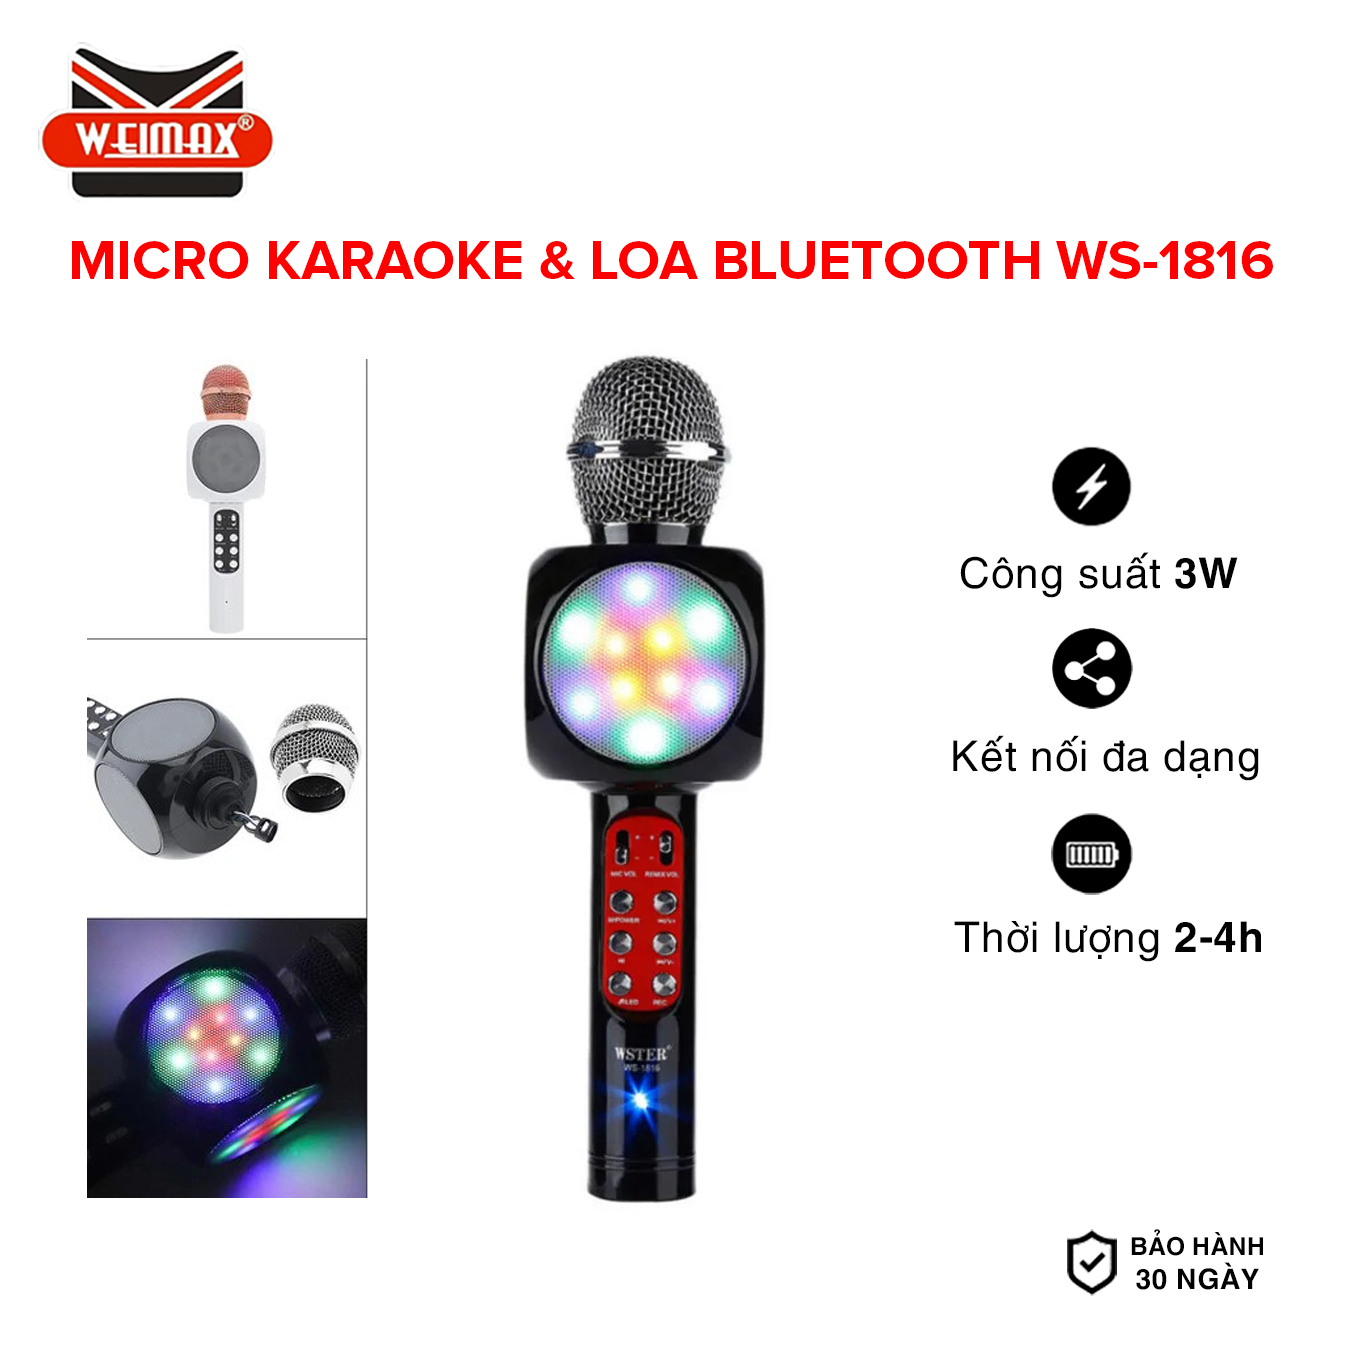 Loa Bluetooth Không Dây Micro karaoke kèm loa blueooth  Loa Hát Karaoke Mini WS-1816 Sạc Pin Không Dây  Âm Thanh Hay Bass Chuẩn Có Thể Thay Đổi GiọngNhỏ Gọn dễ sử dụng